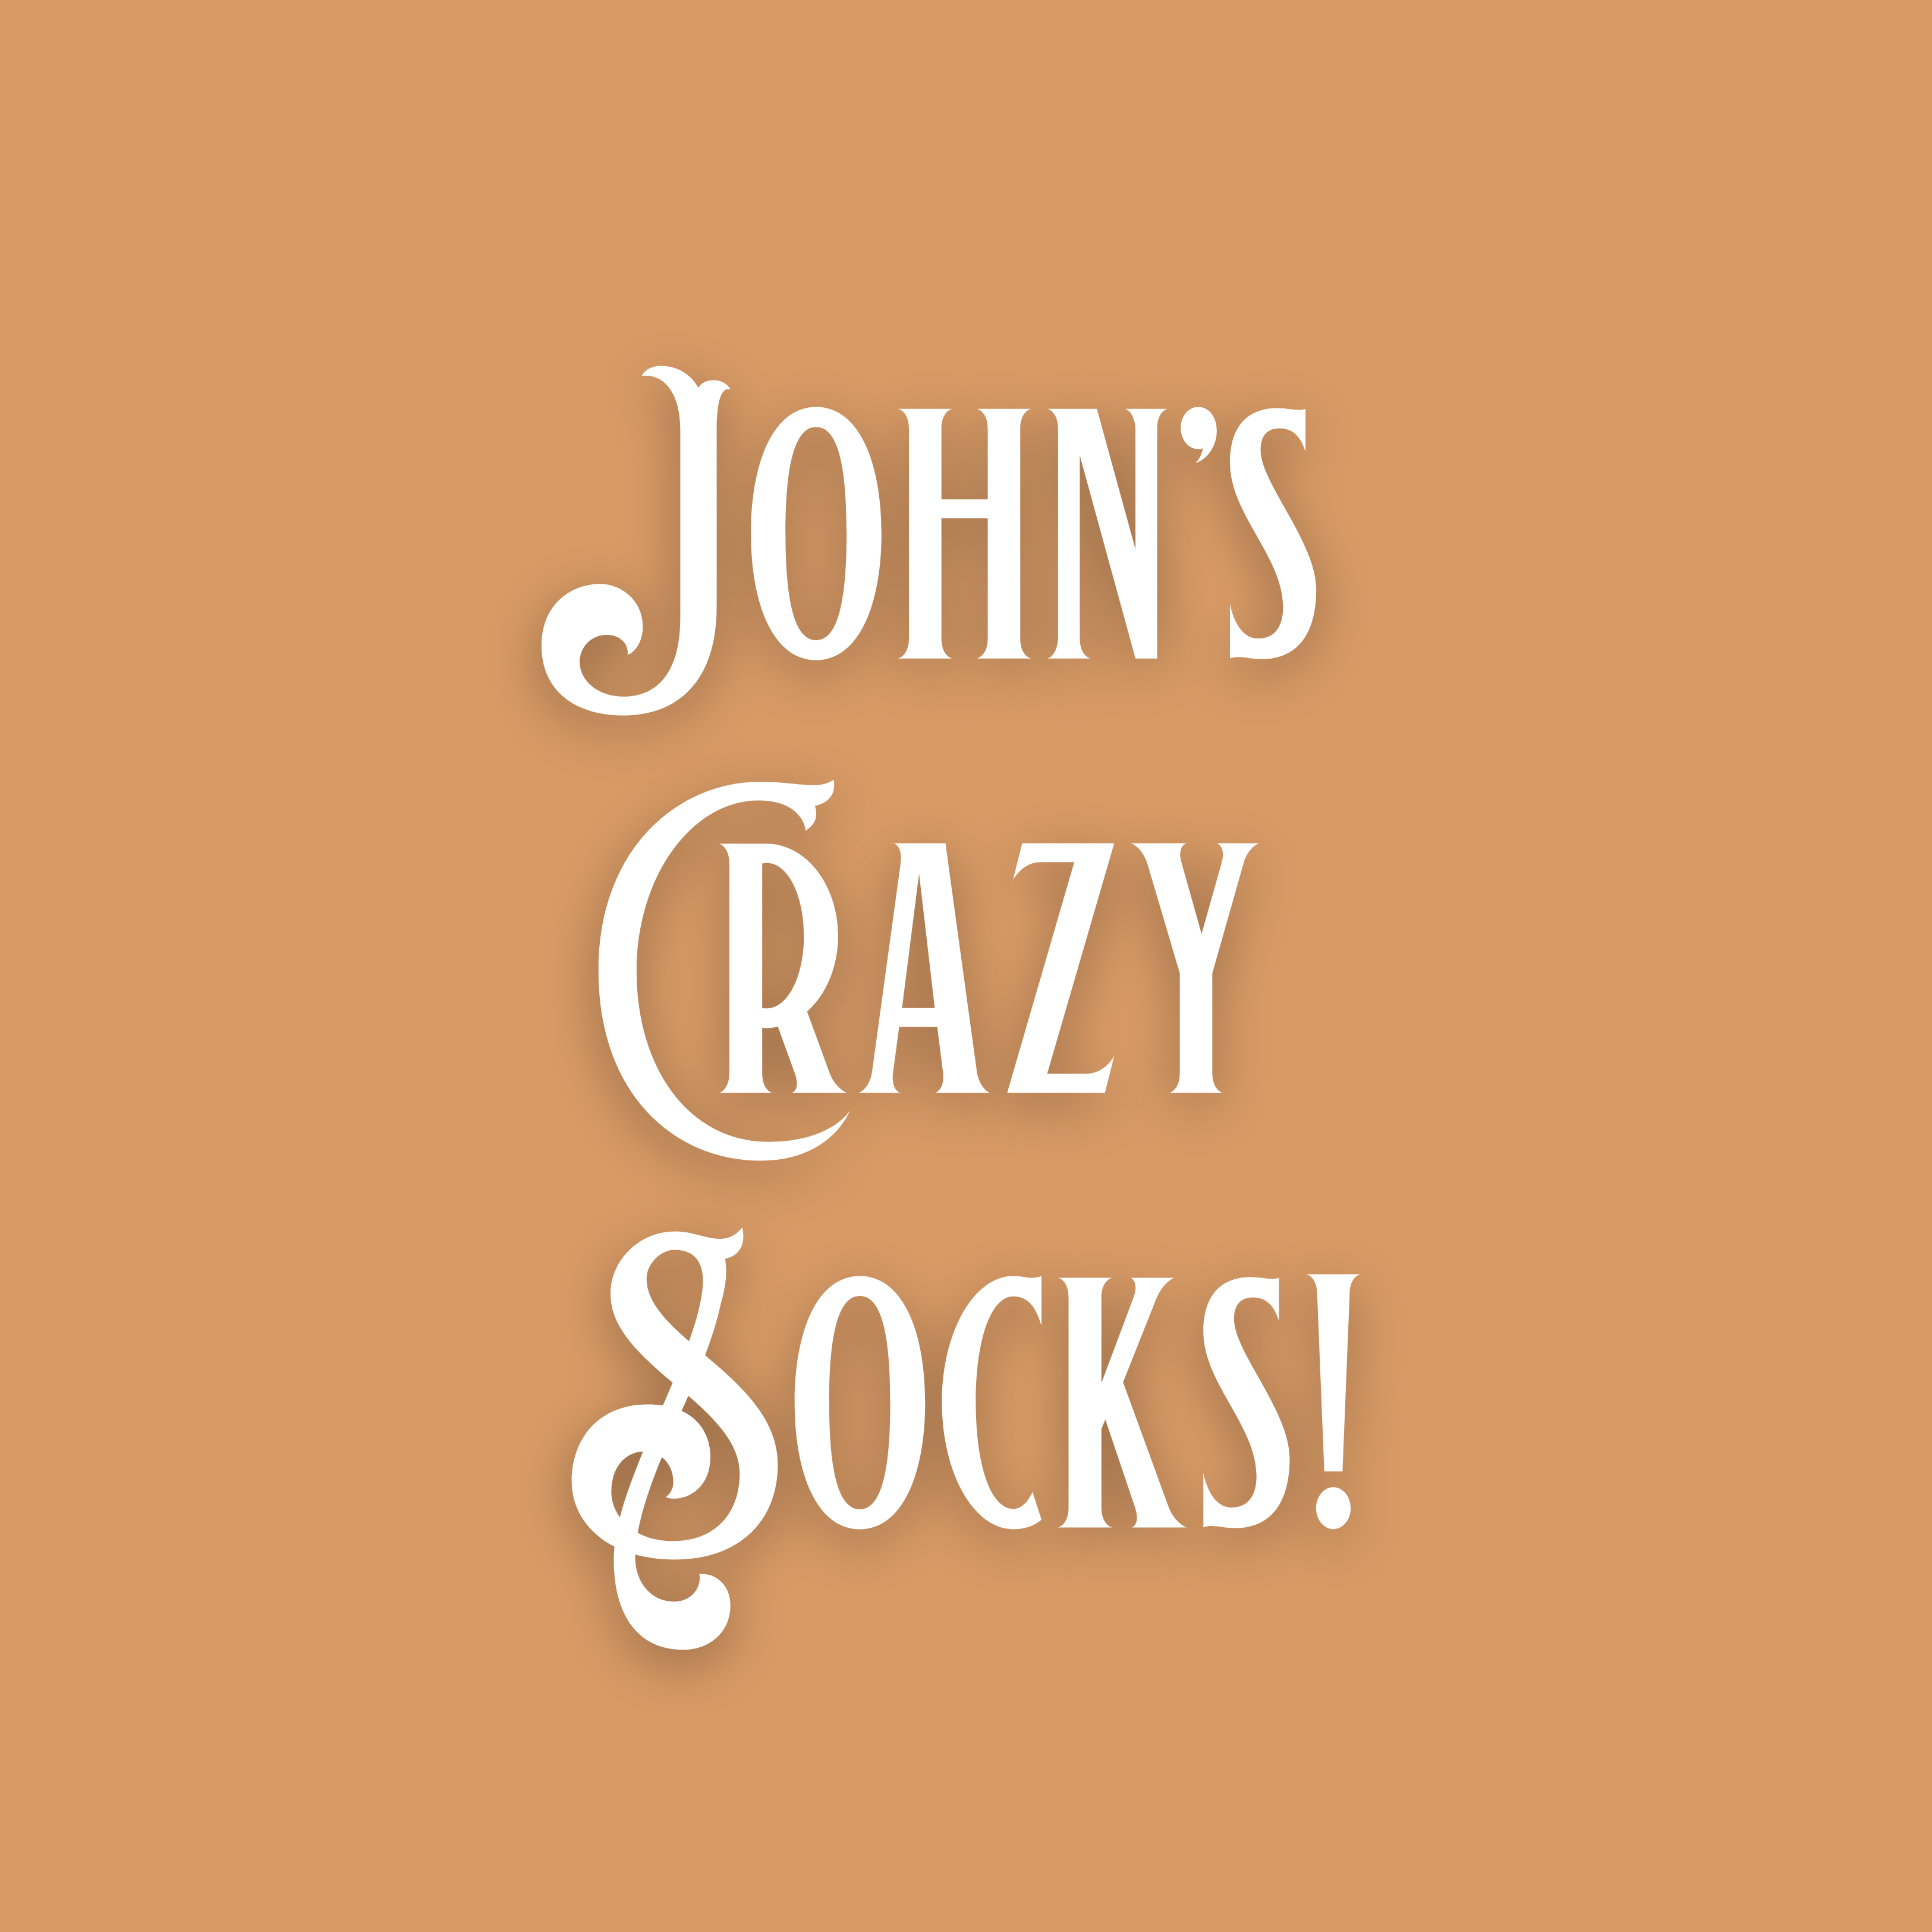 John's Crazy Socks!